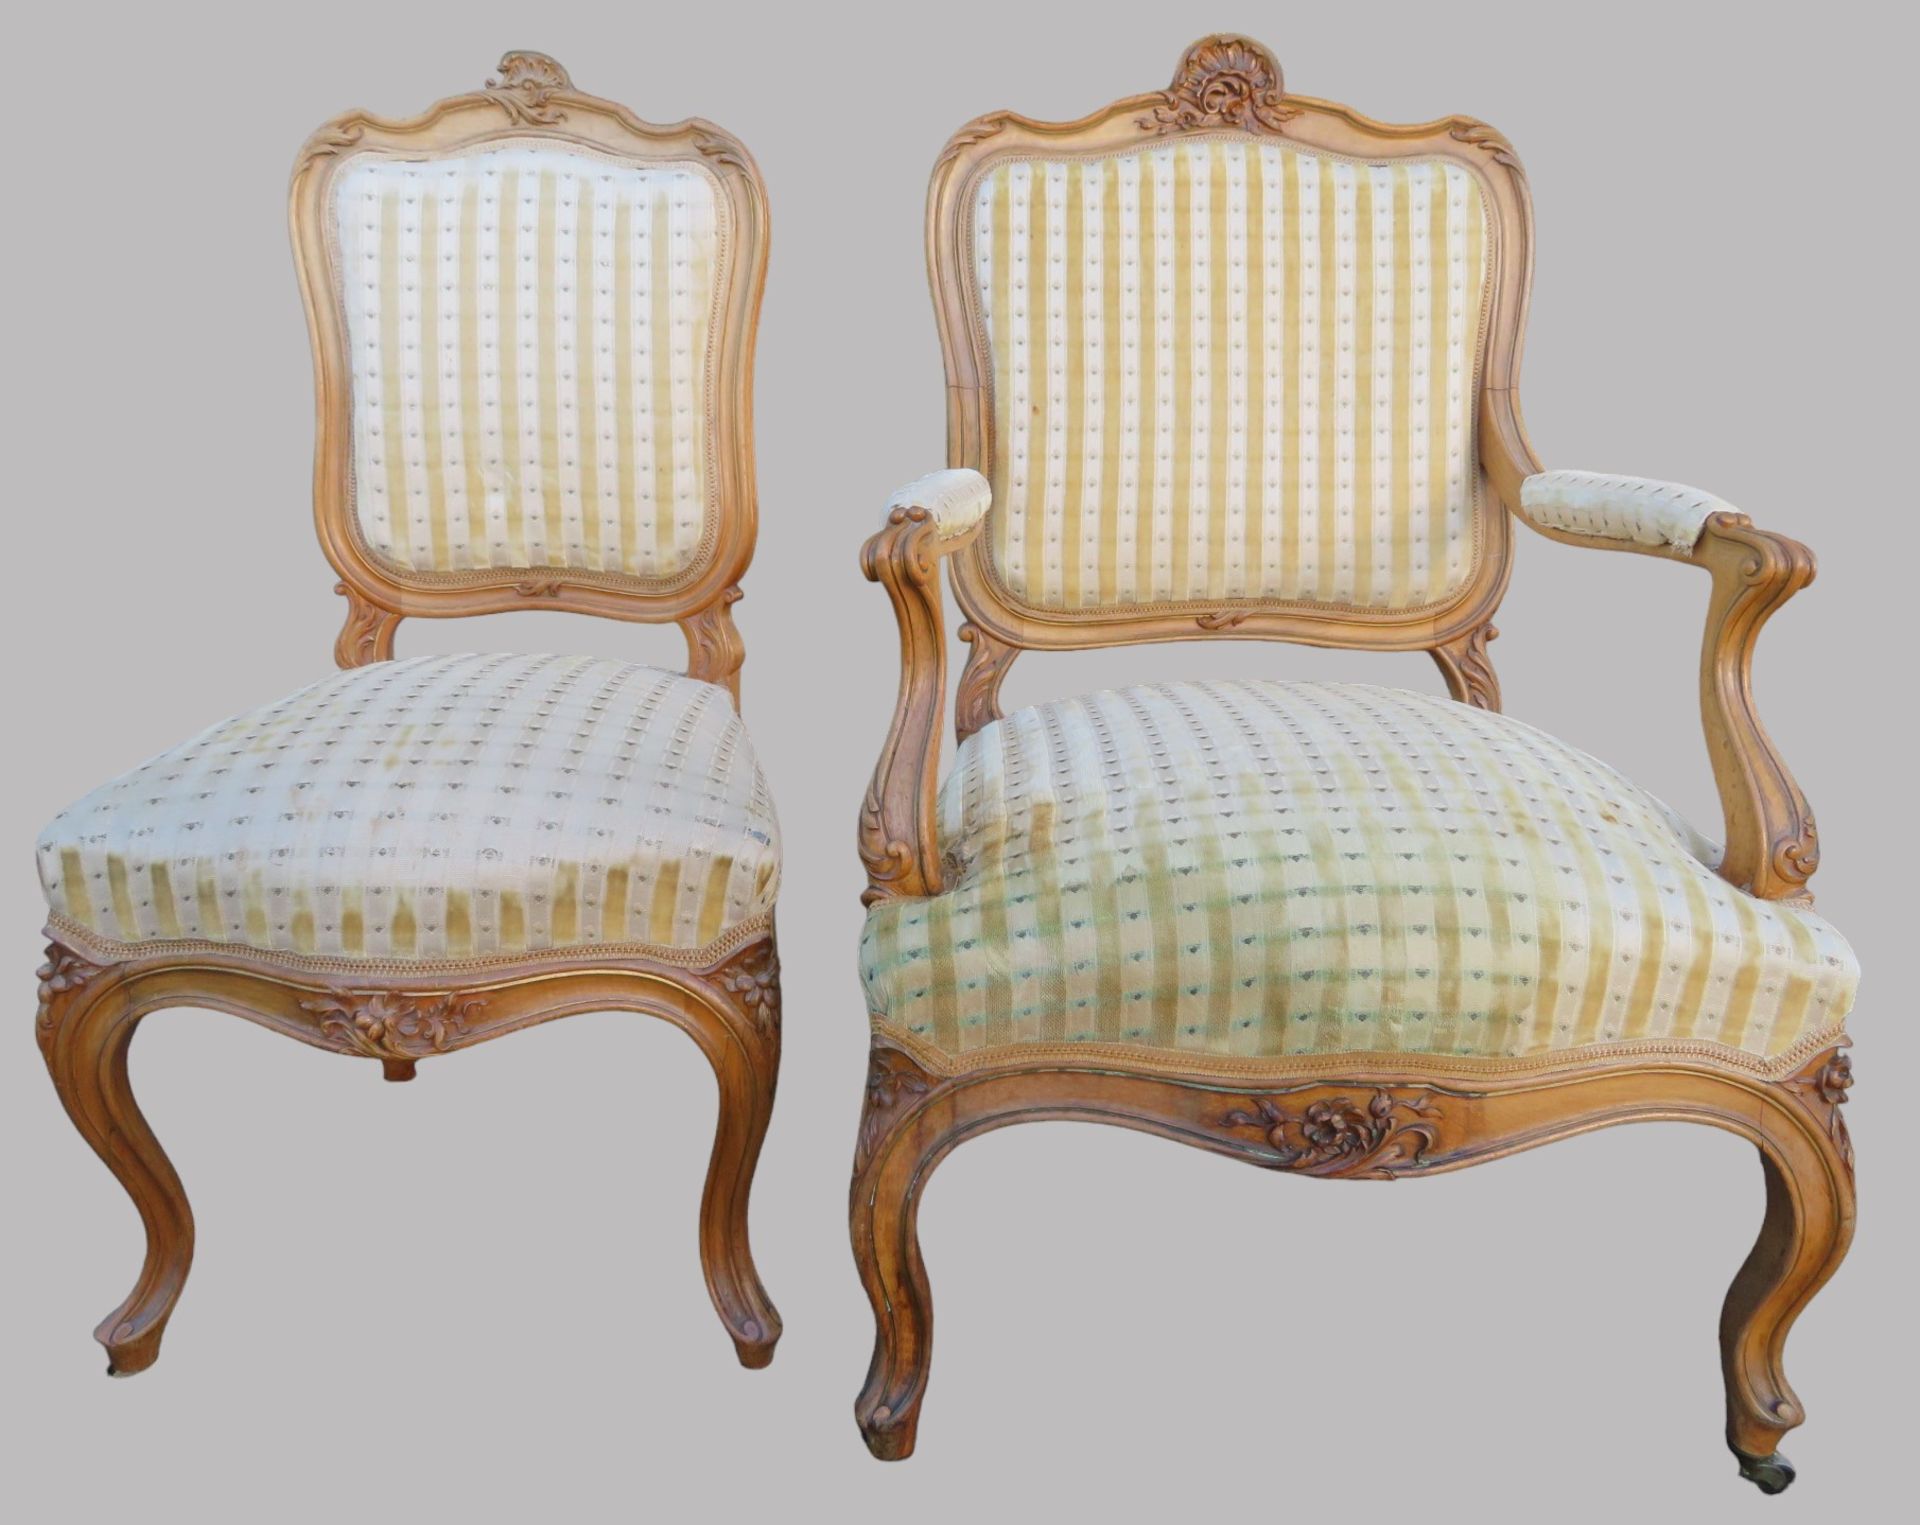 5 teilige Sitzgarnitur, Rokokostil, 19. Jahrhundert, Nussbaum beschnitzt, rest.bed., Sofa 108 x 144 - Bild 3 aus 5